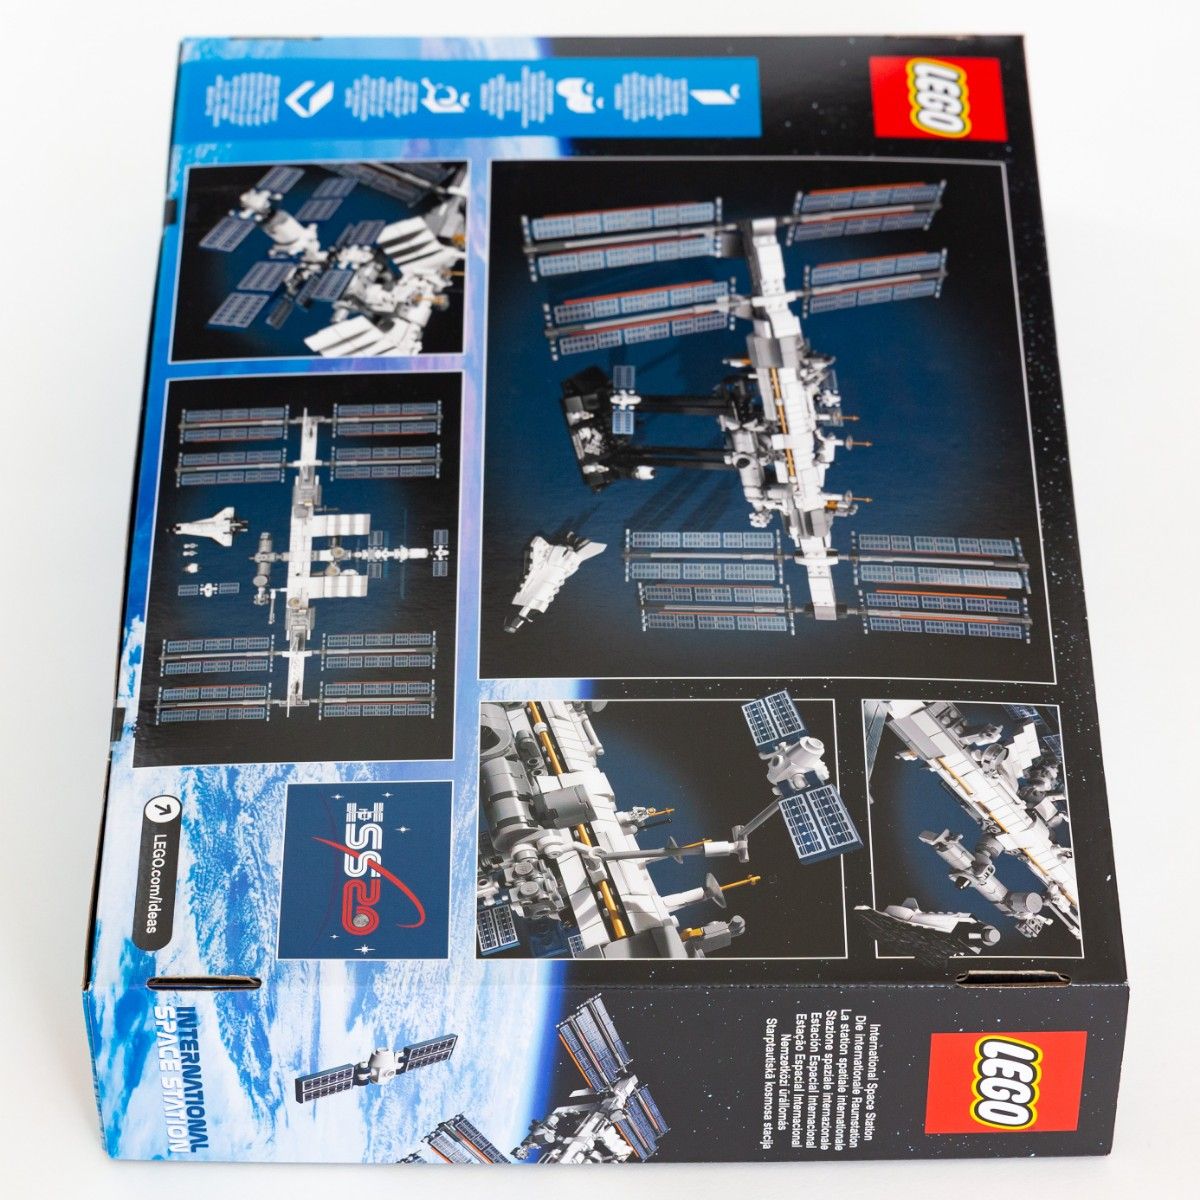 【新品】 レゴ LEGO 21321 アイデア 国際宇宙ステーション International Space Station